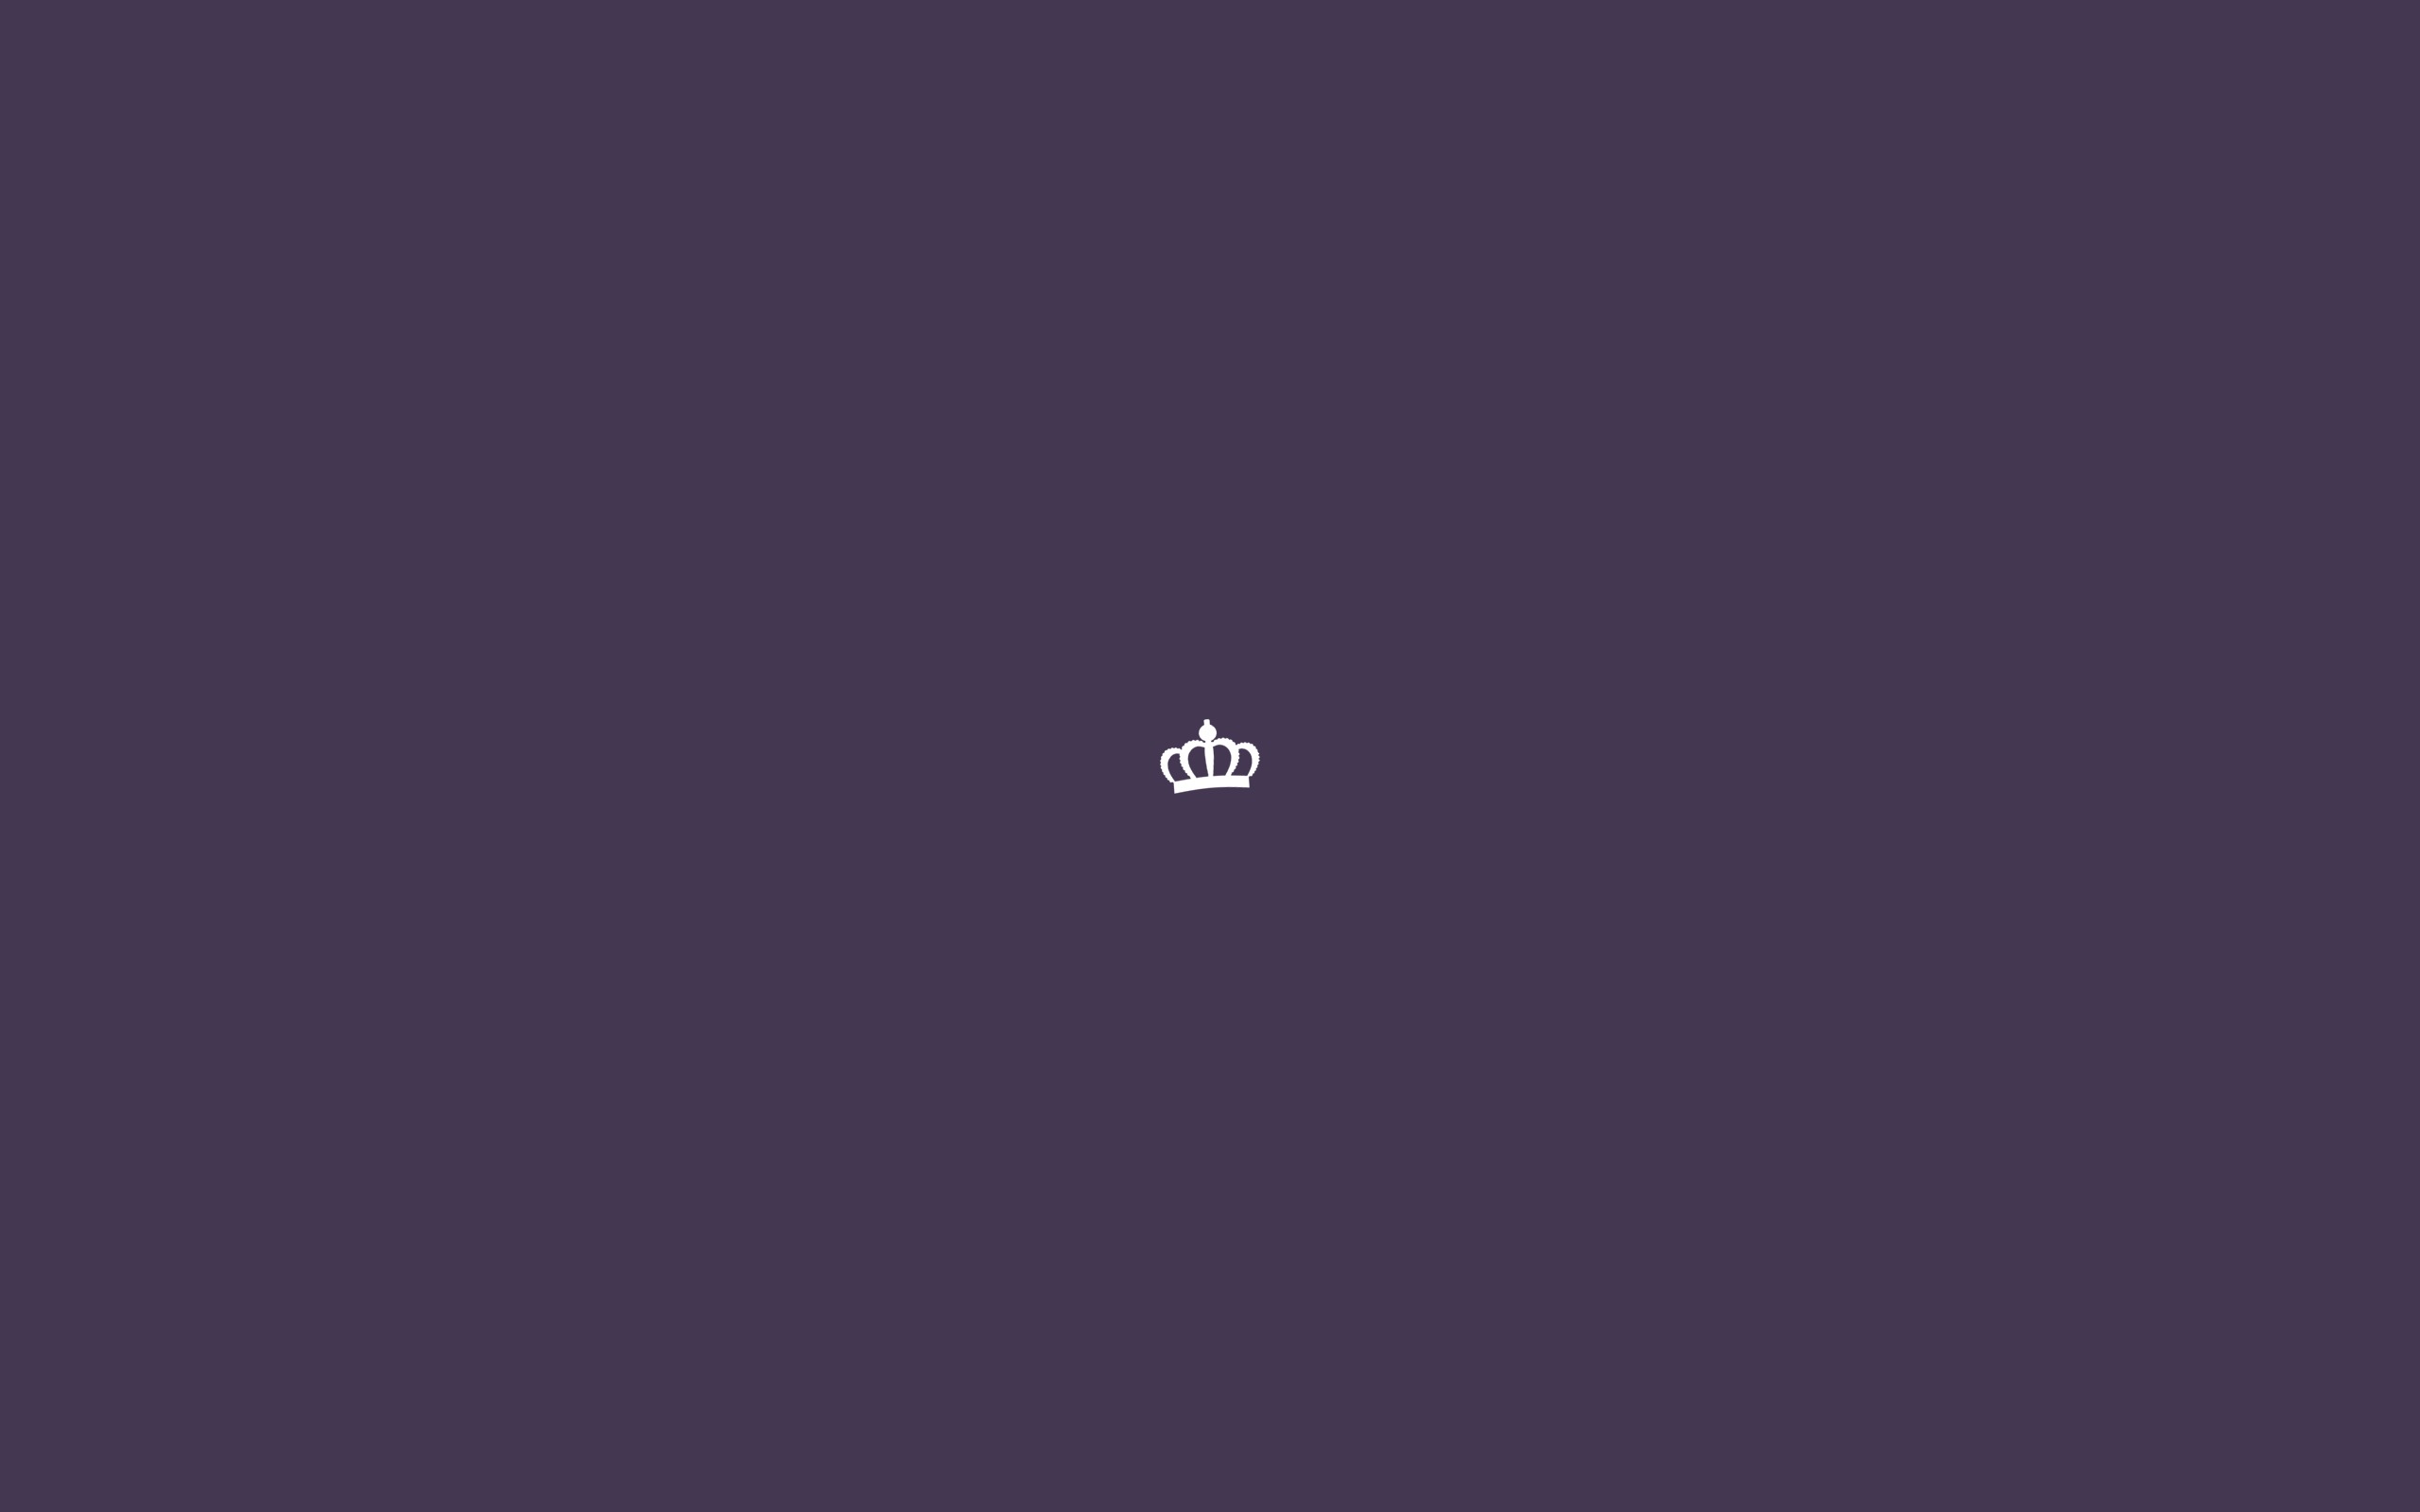 корона, сиреневый фон, минимализм, скачать бесплатно, Crown, lilac background, minimalism, free download